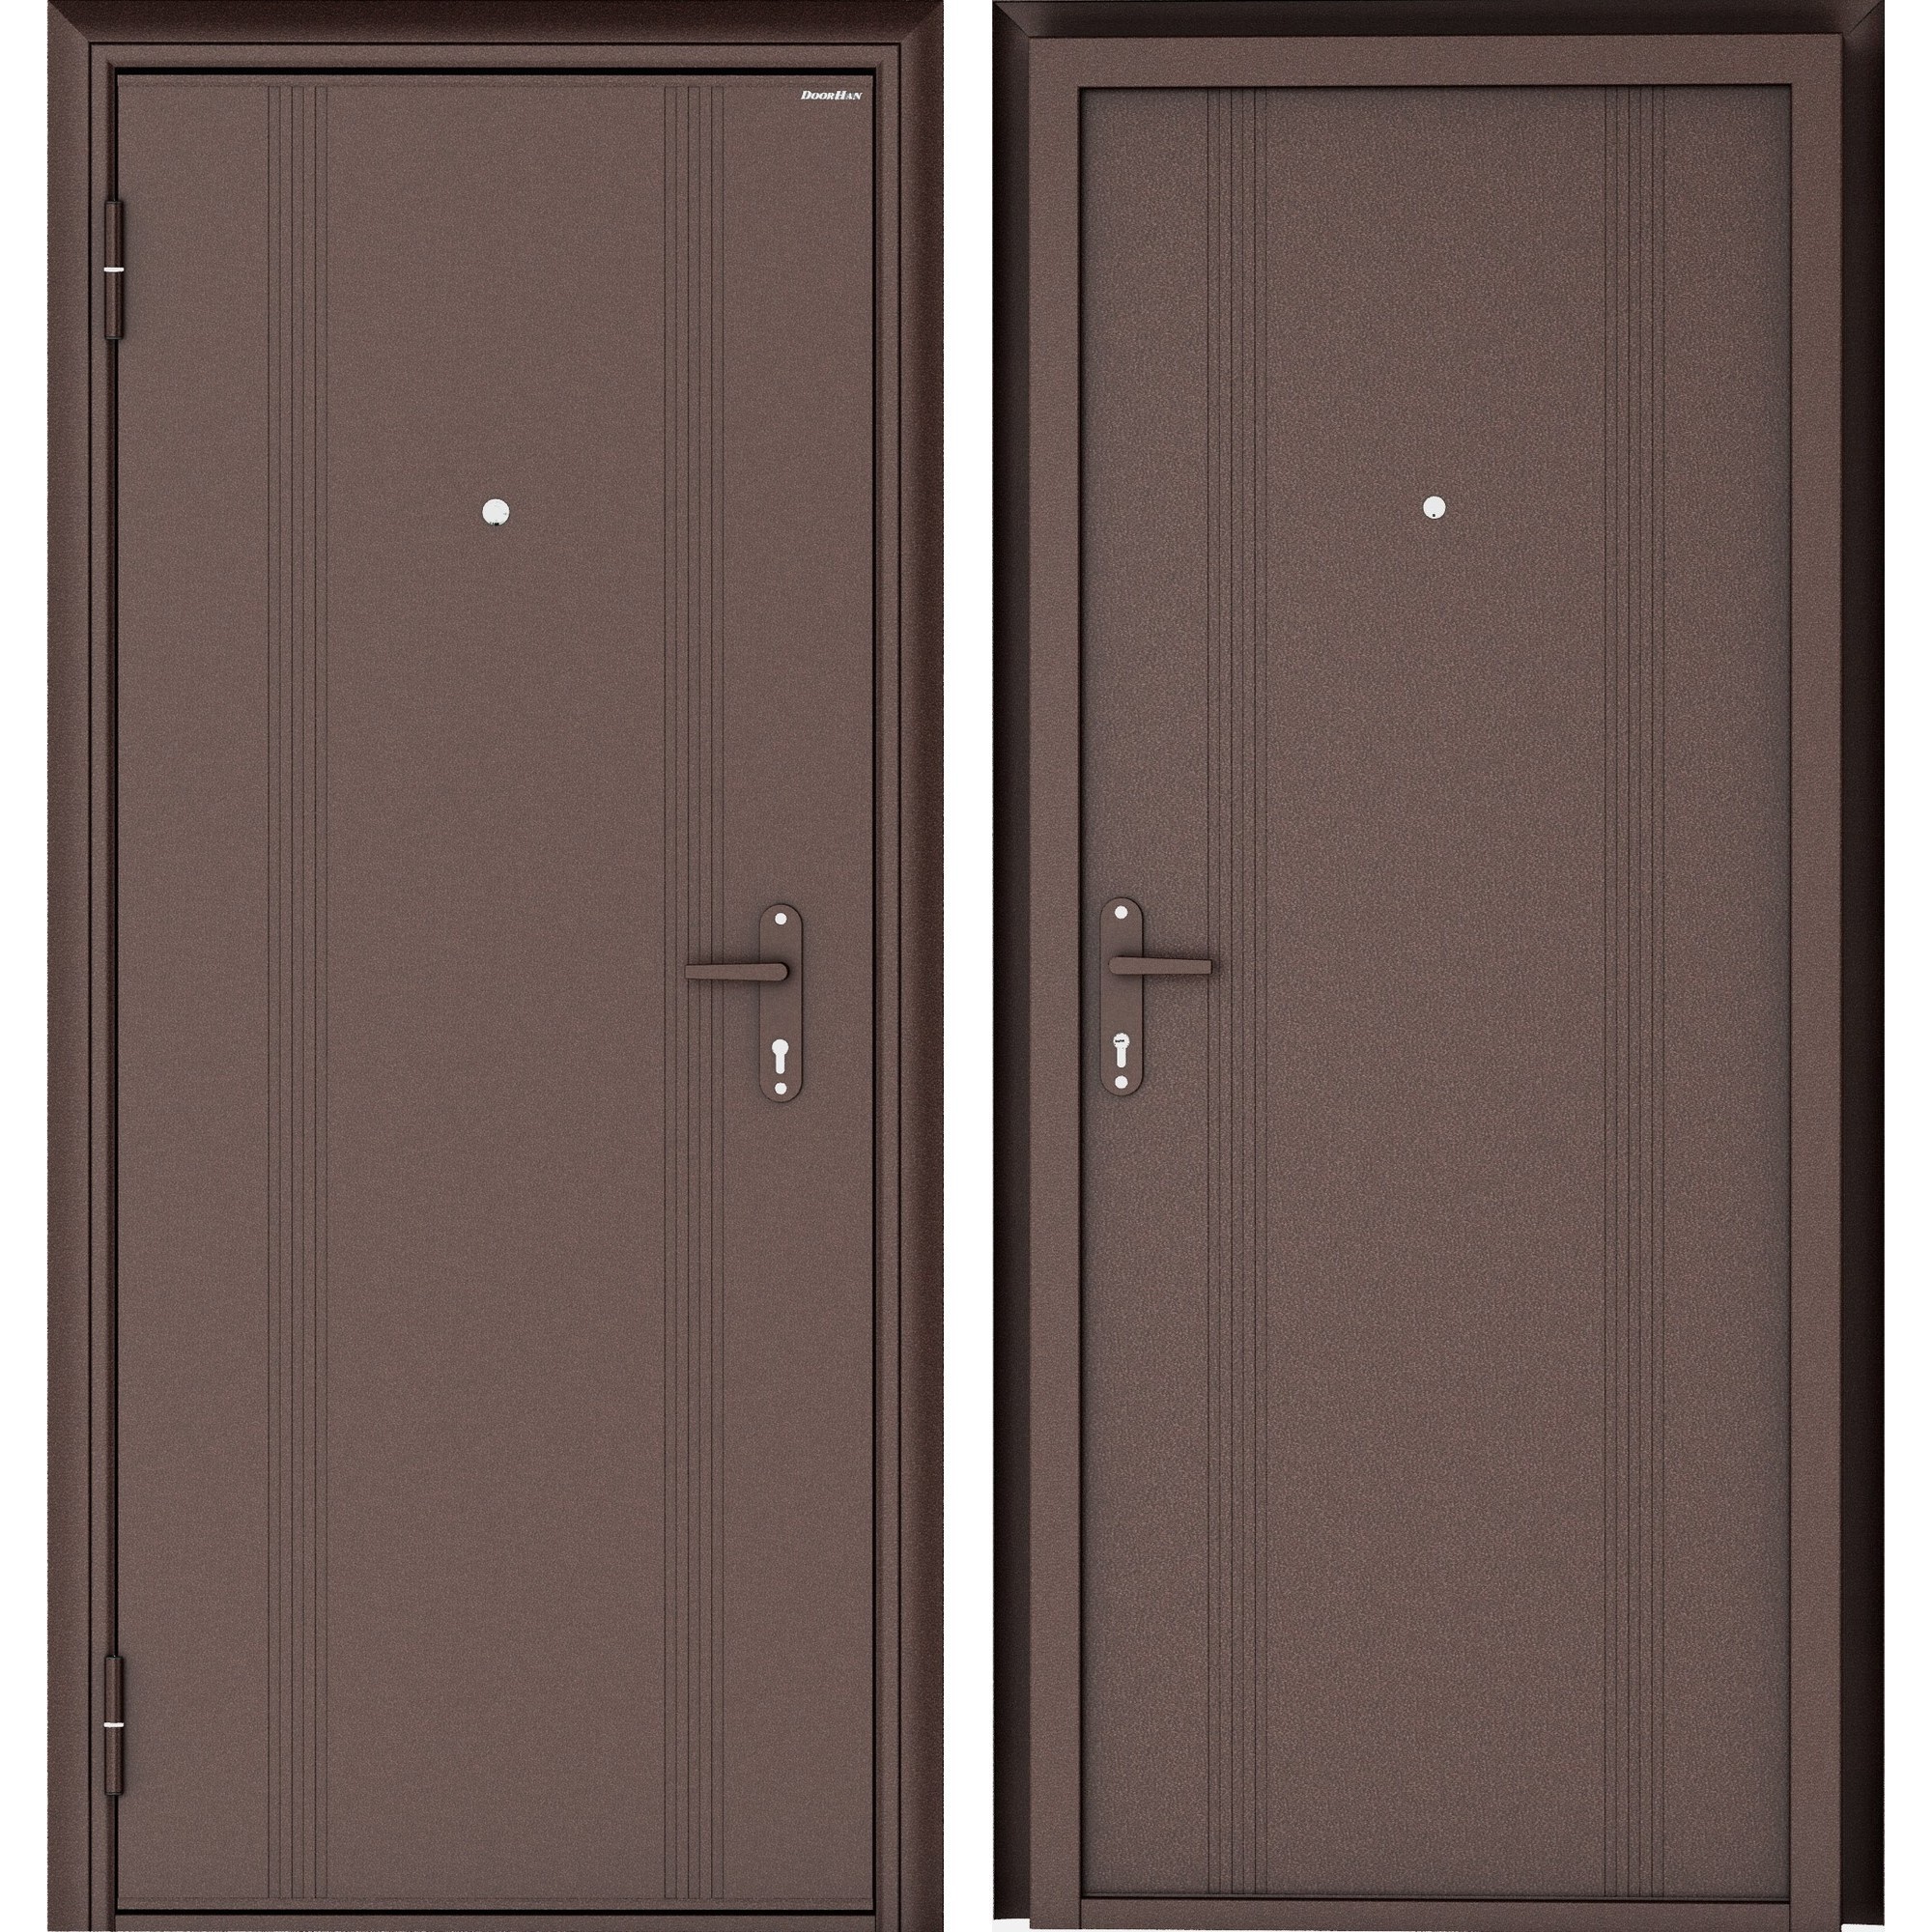 16802315 Дверь входная металлическая Эко, 980 мм, левая, цвет антик медь STLM-0007192 DOORHAN